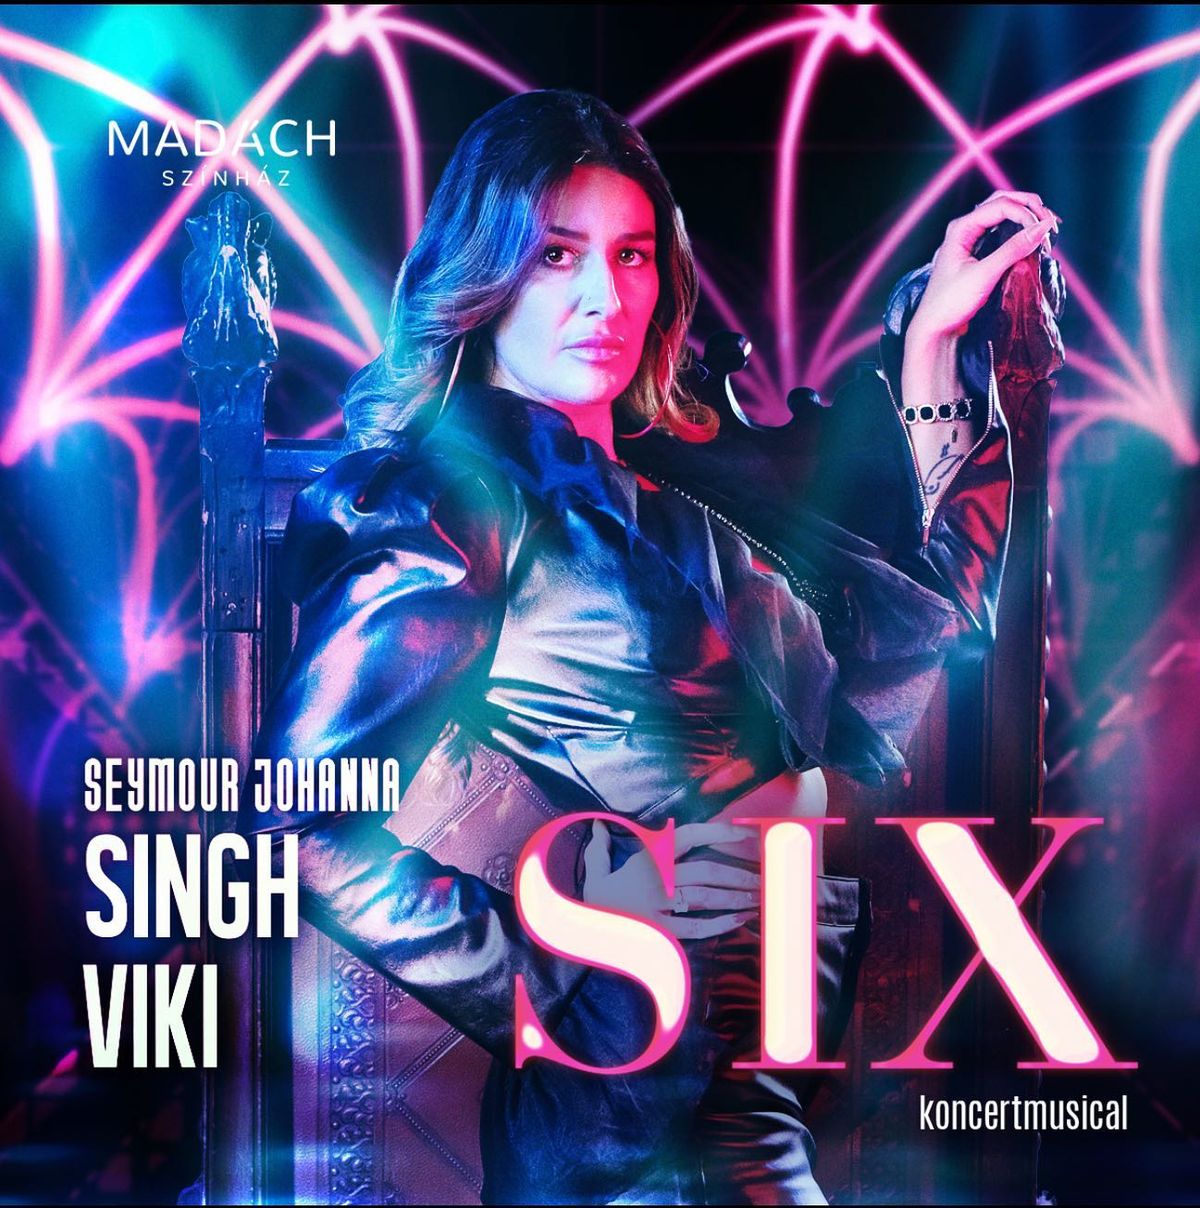 Singh Viki Six
